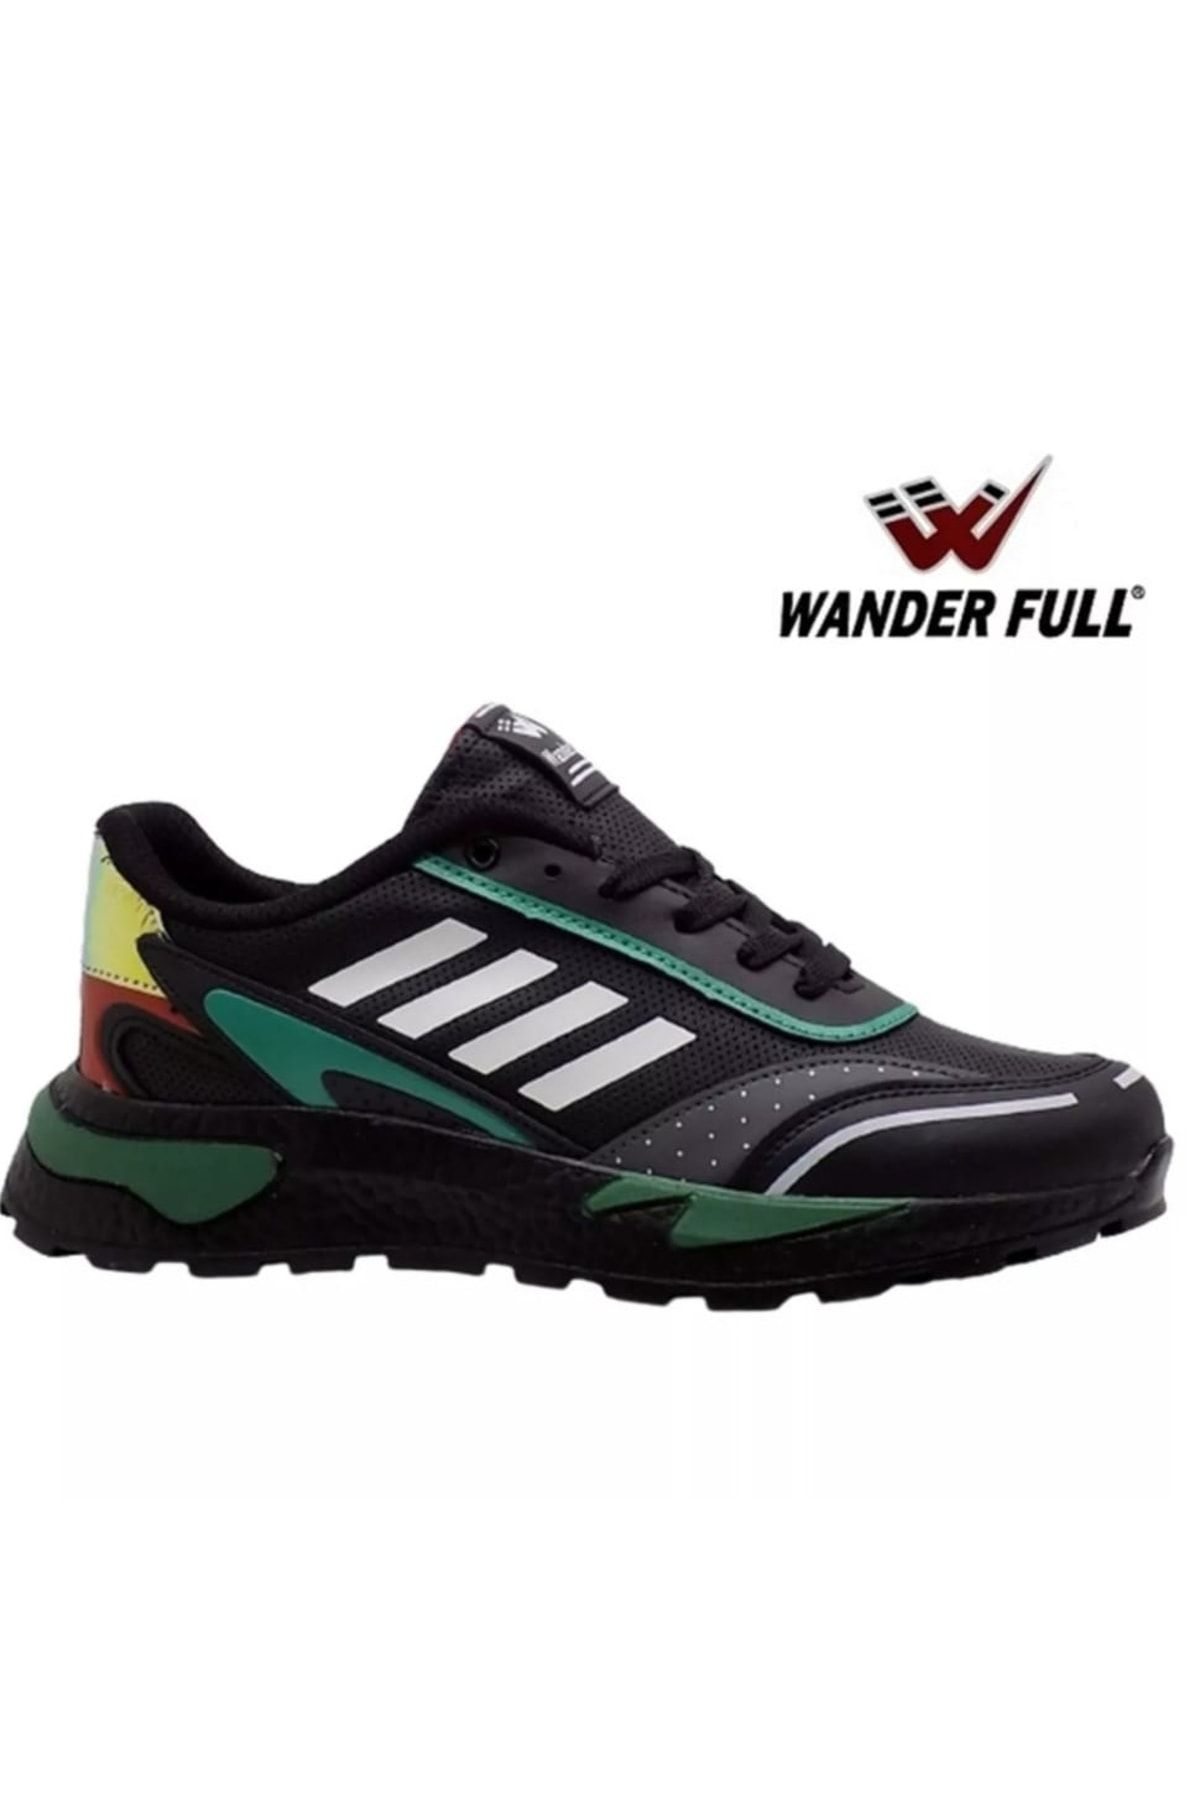 Wanderfull M- 4189 Spor Ayakkabı